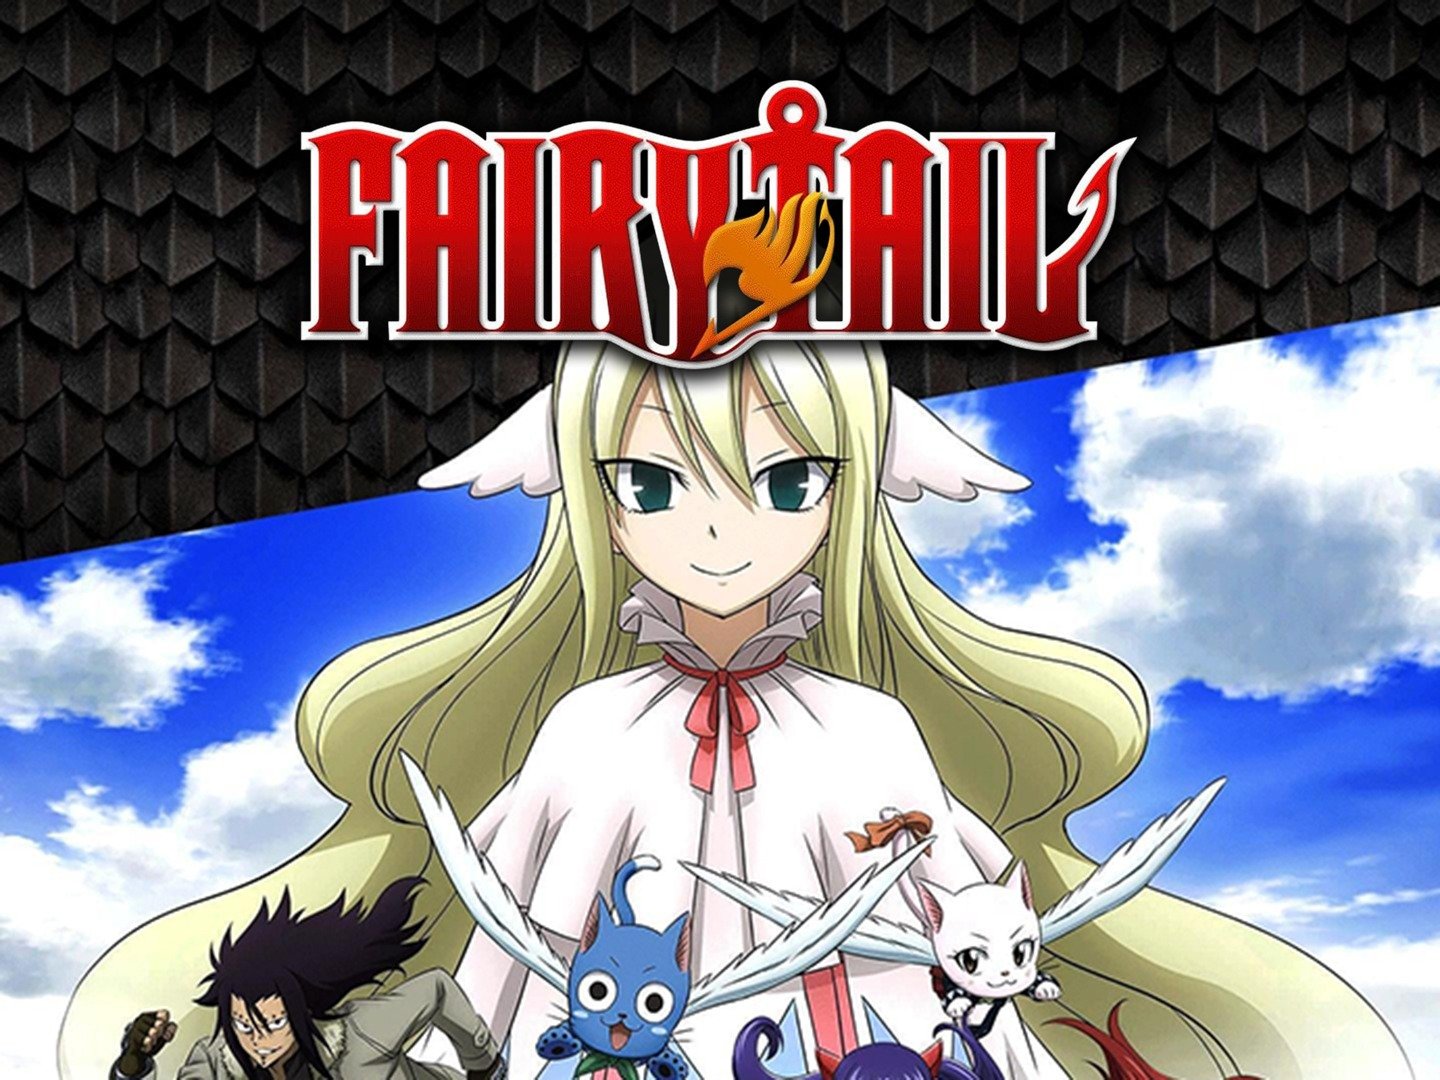 Final Fairy Tail Anime Series Announced for 2018  MyAnimeListnet